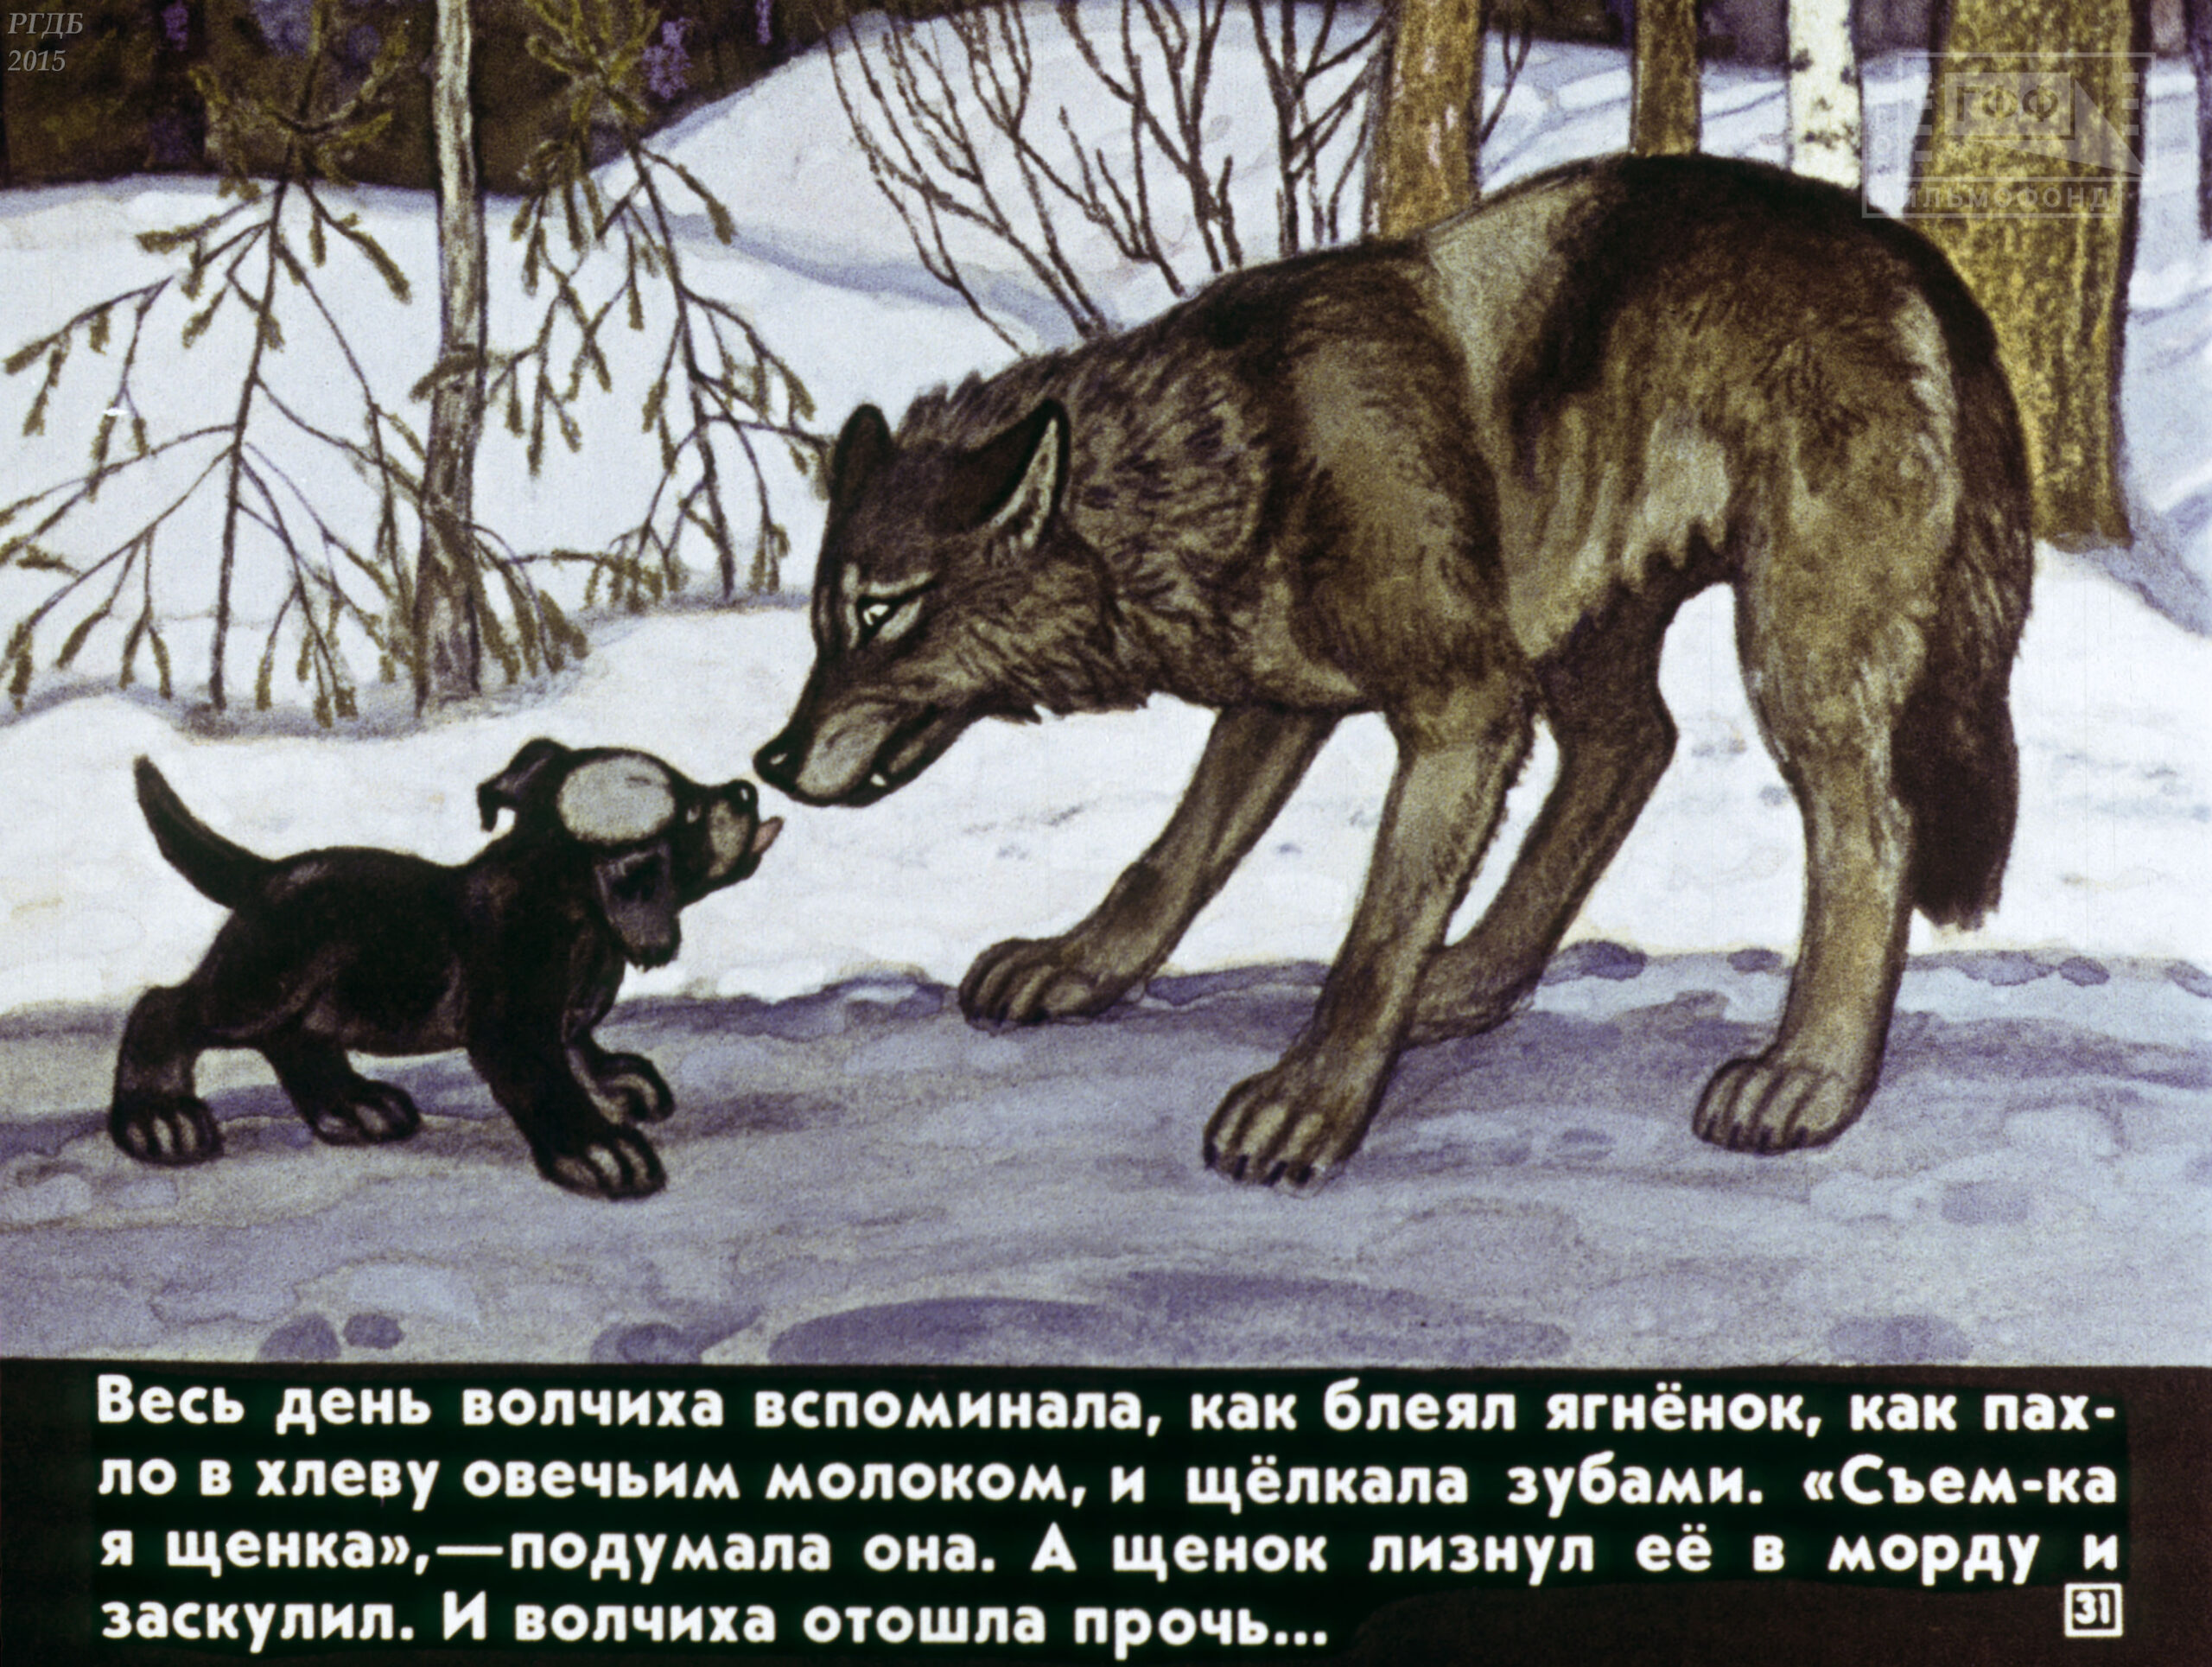 По сугробу волчиха взобралась. Рассказ белолобый Чехов. Иллюстрация к белолобый Чехова.